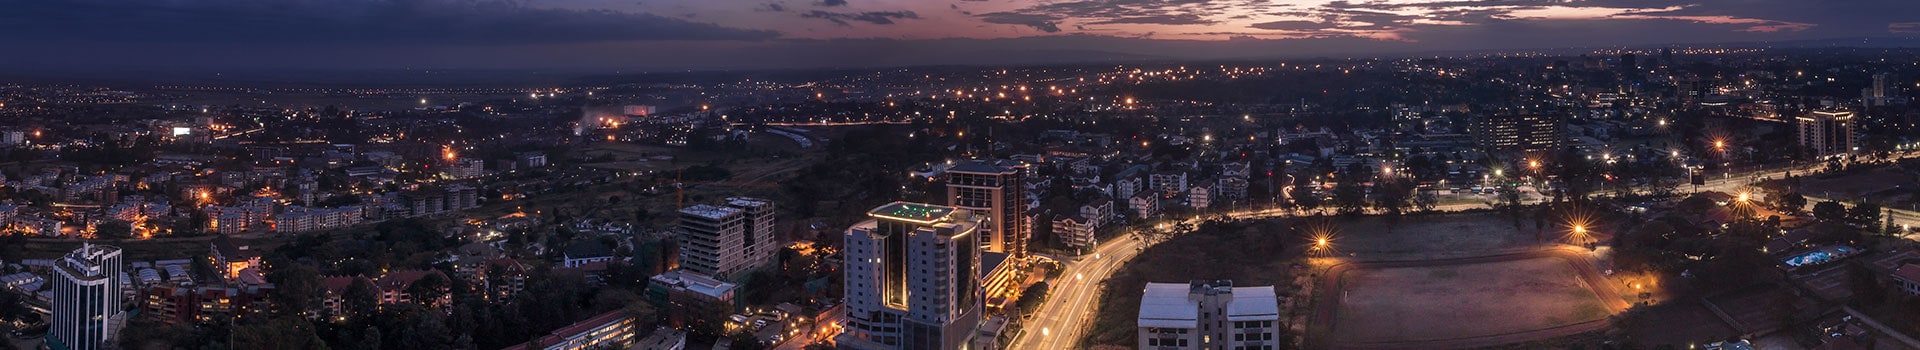 Milão - Nairobi